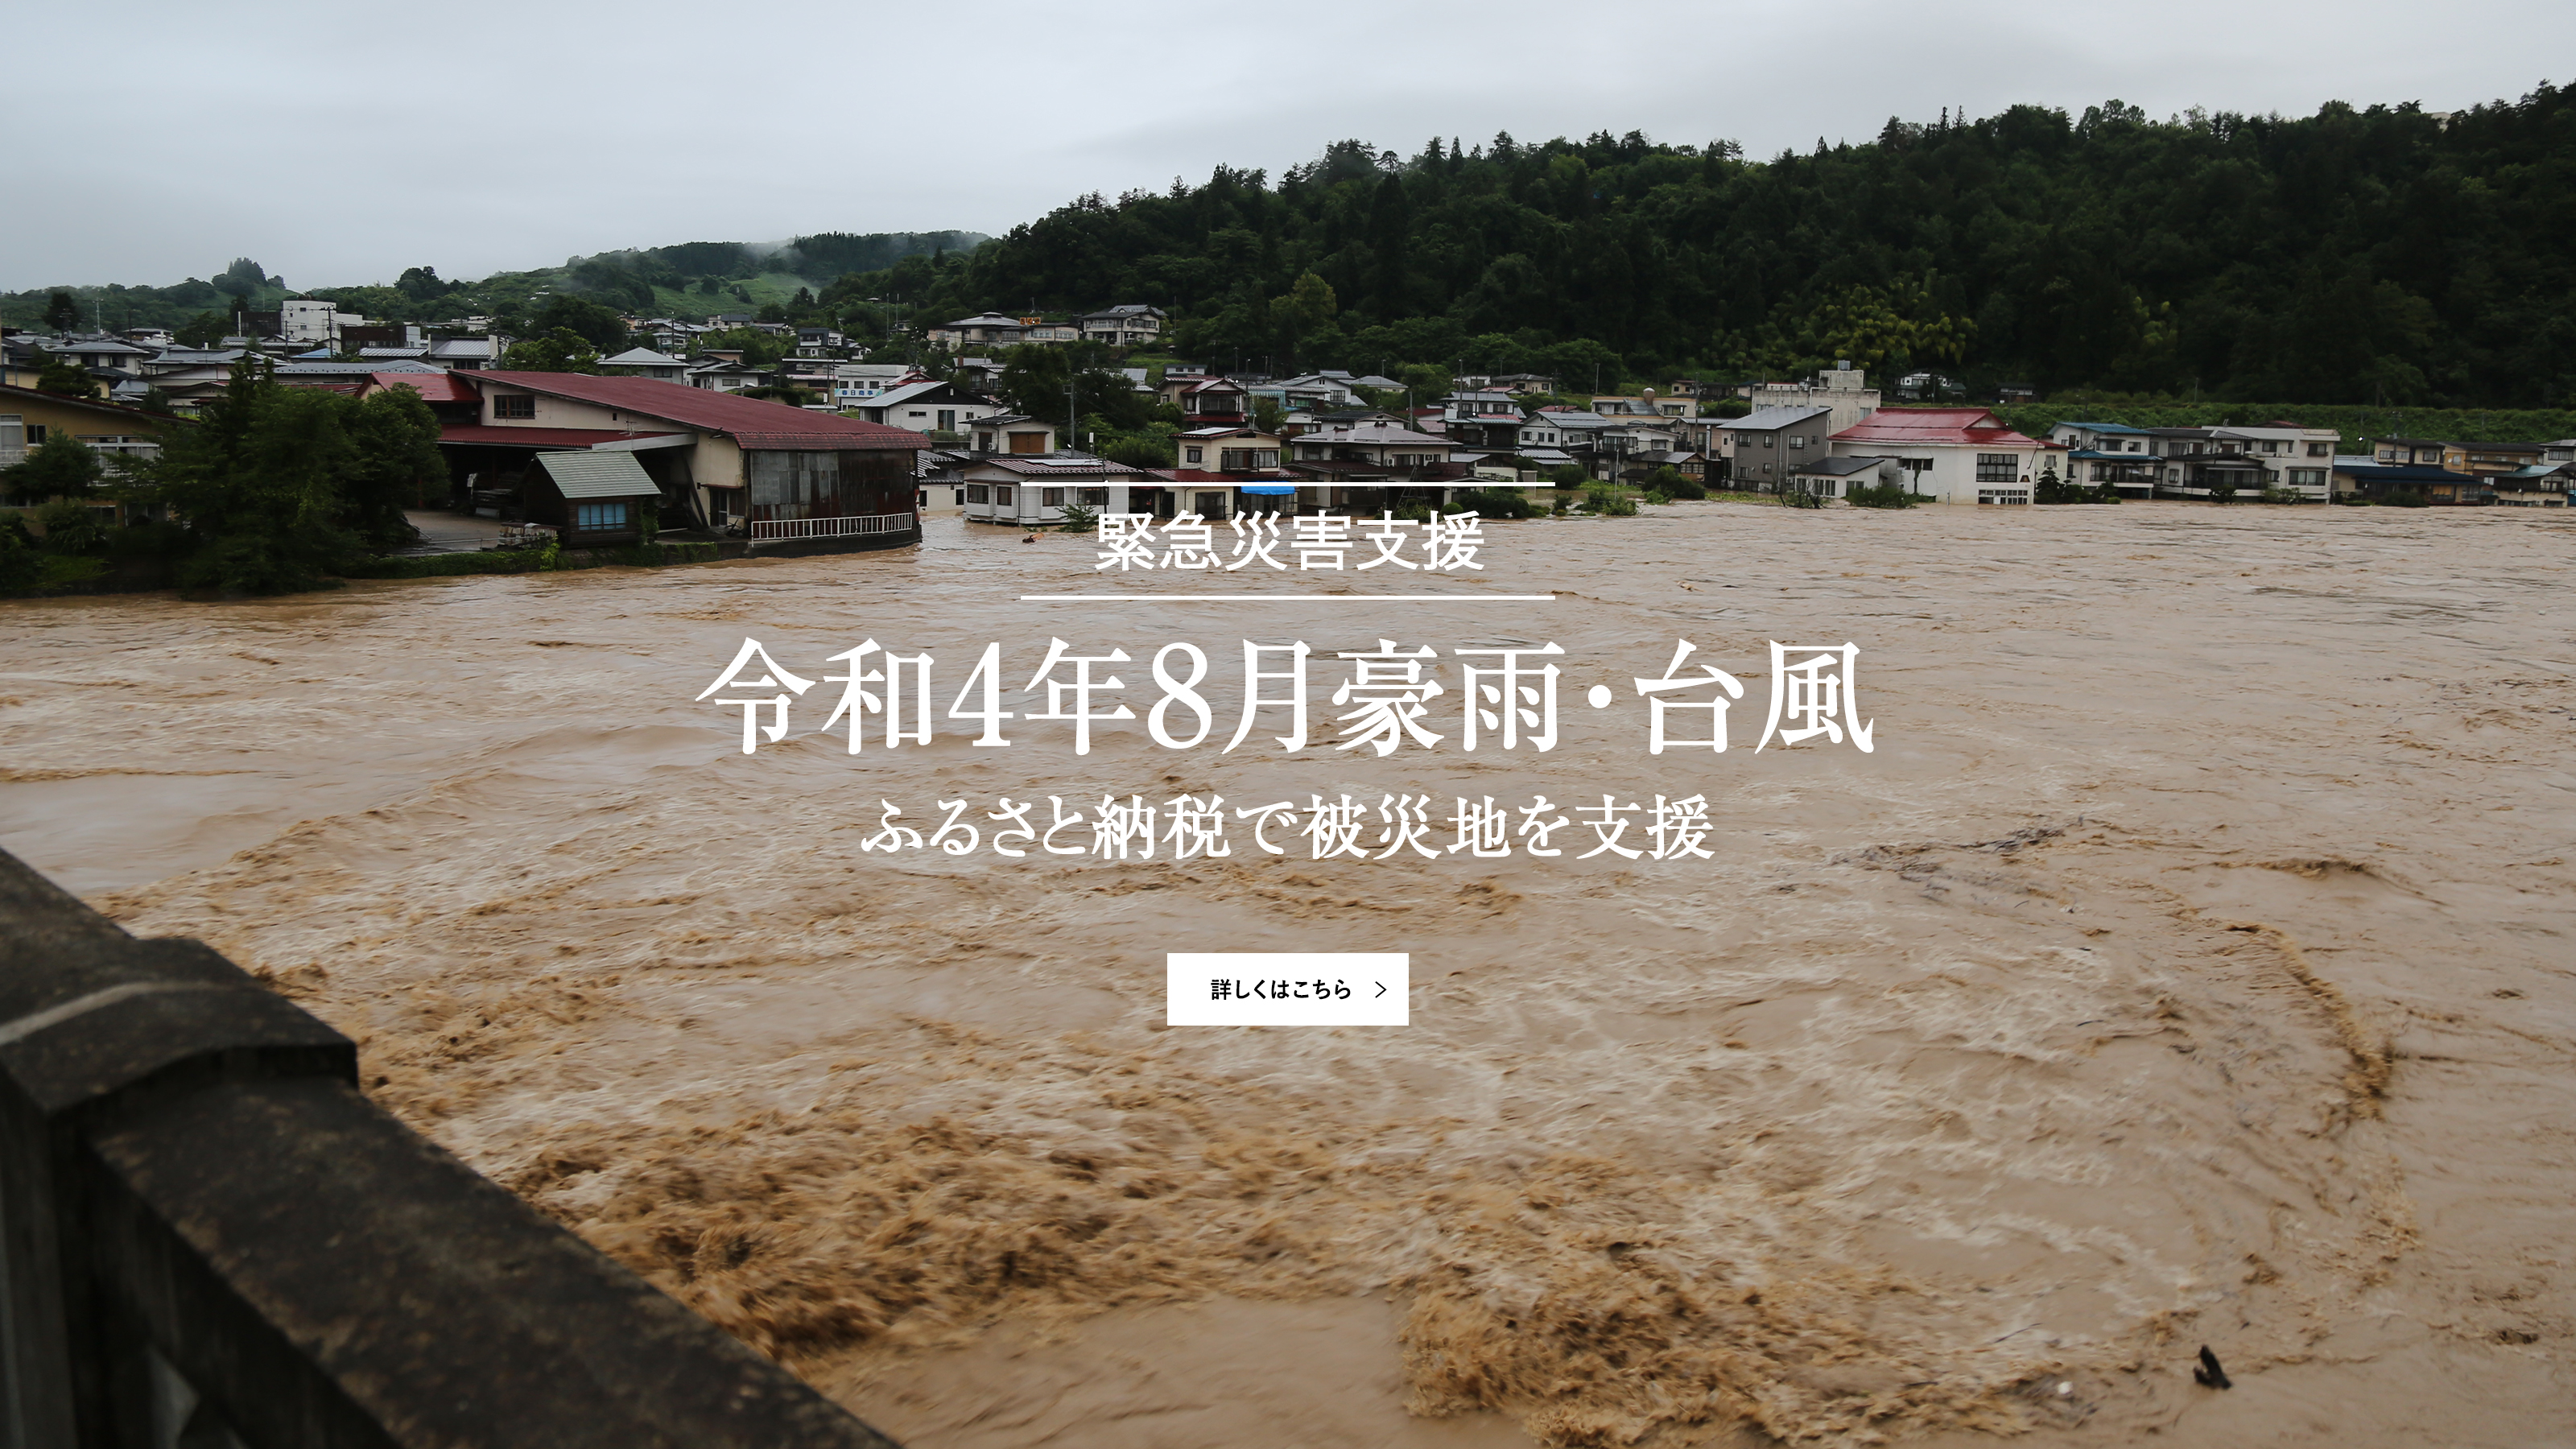 緊急災害支援 令和4年8月豪雨 ふるさと納税で被災地を支援